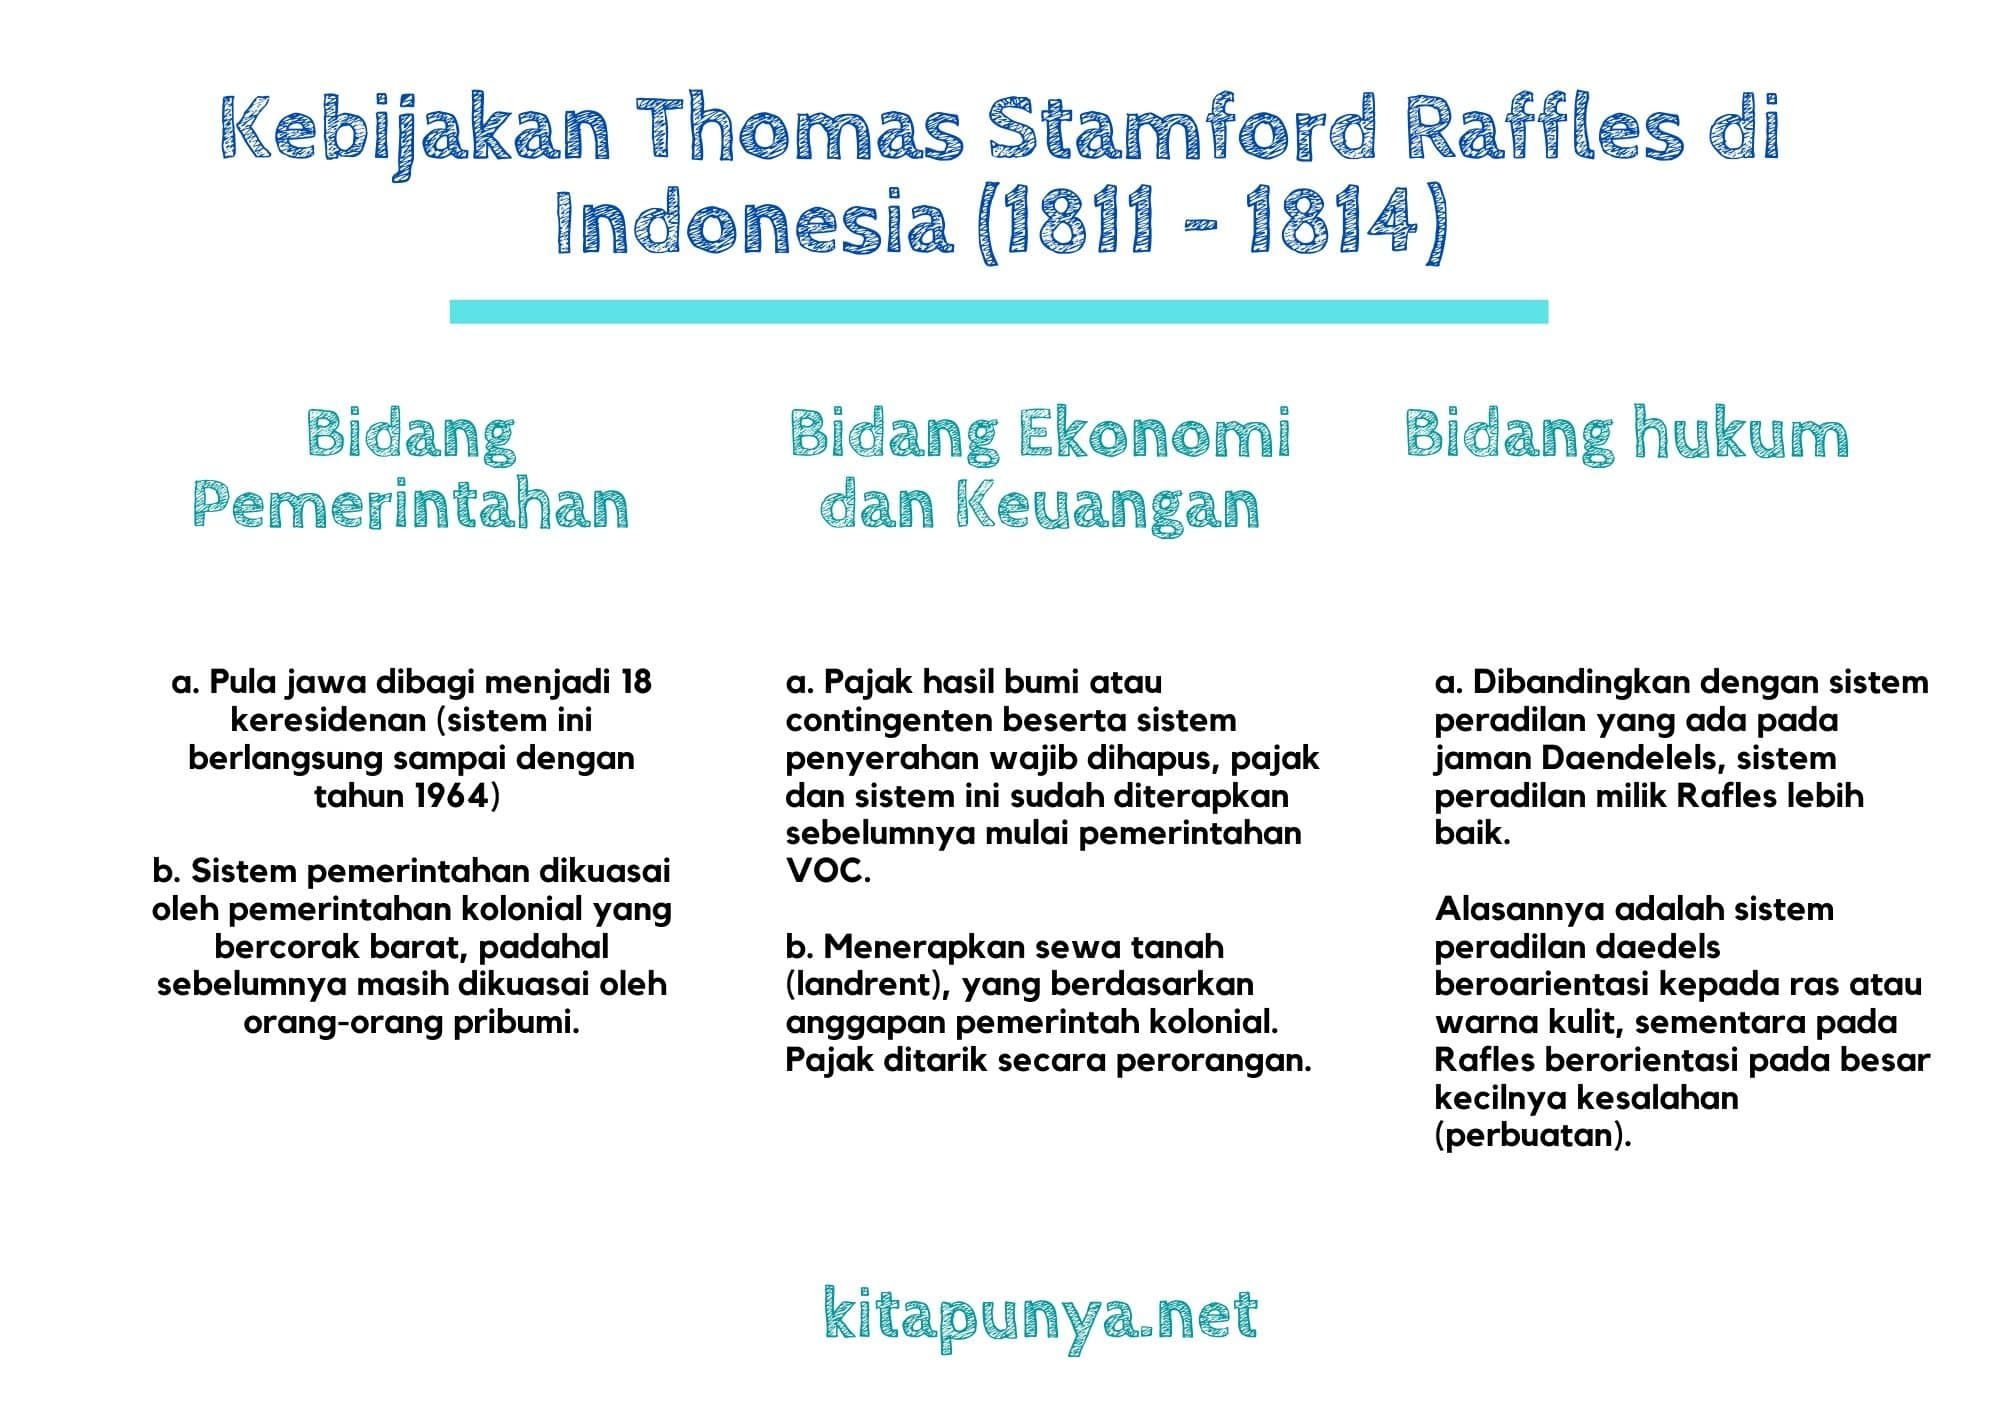 Mengapa thomas stamford raffles menerapkan kebijakan ekonomi di indonesia seperti yang dijalankan inggris di india